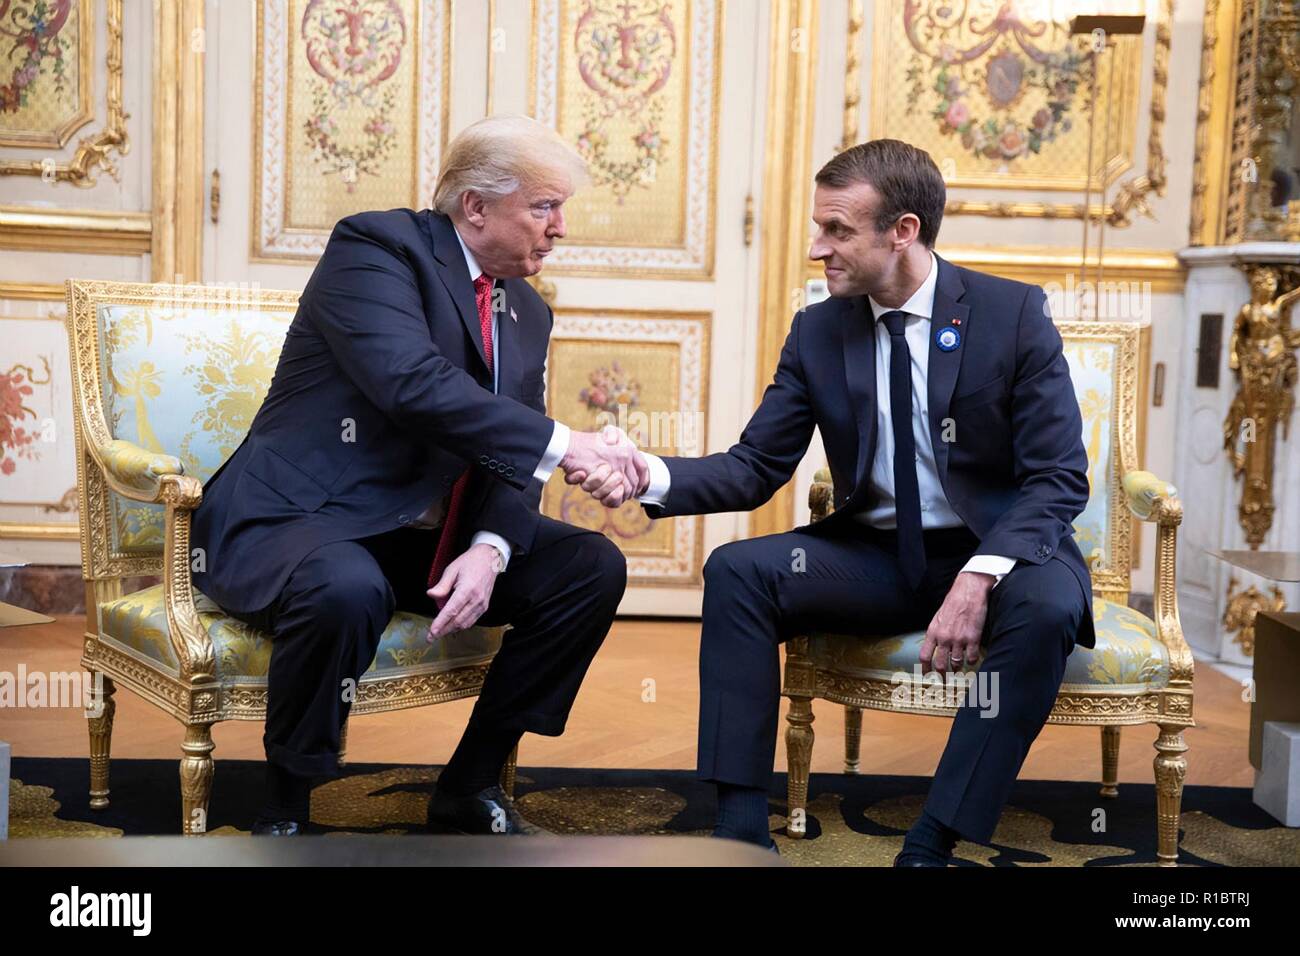 U.S presidente Donald Trump, sinistro e il presidente francese Emmanuel Macron agitare le mani prima di iniziare a durante un incontro bilaterale al Elysee Palace Novembre 10, 2018 a Parigi, Francia. Trump è in Francia per celebrazioni per il centenario della fine della prima guerra mondiale I. Foto Stock